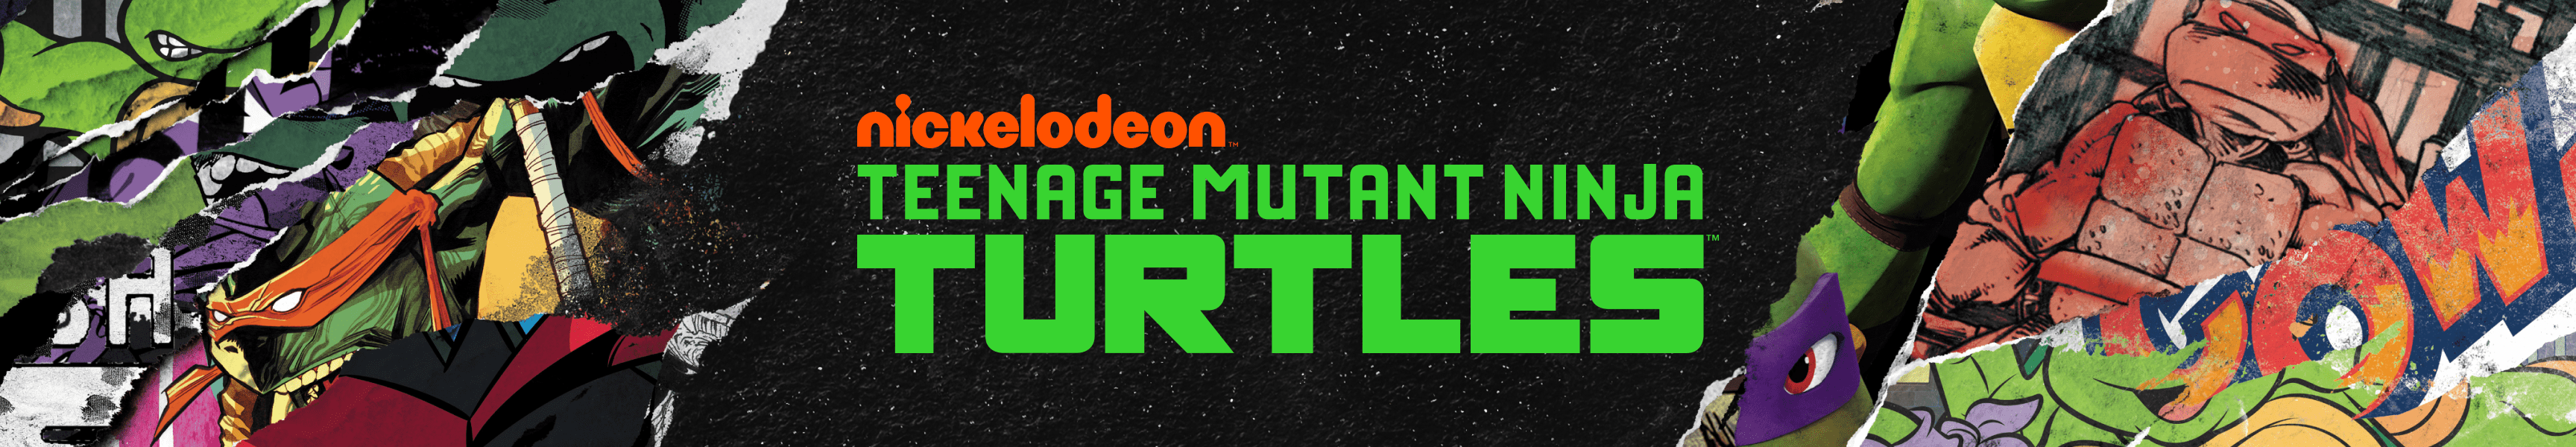 Teenage Mutant Ninja Turtles Nouveaux arrivages